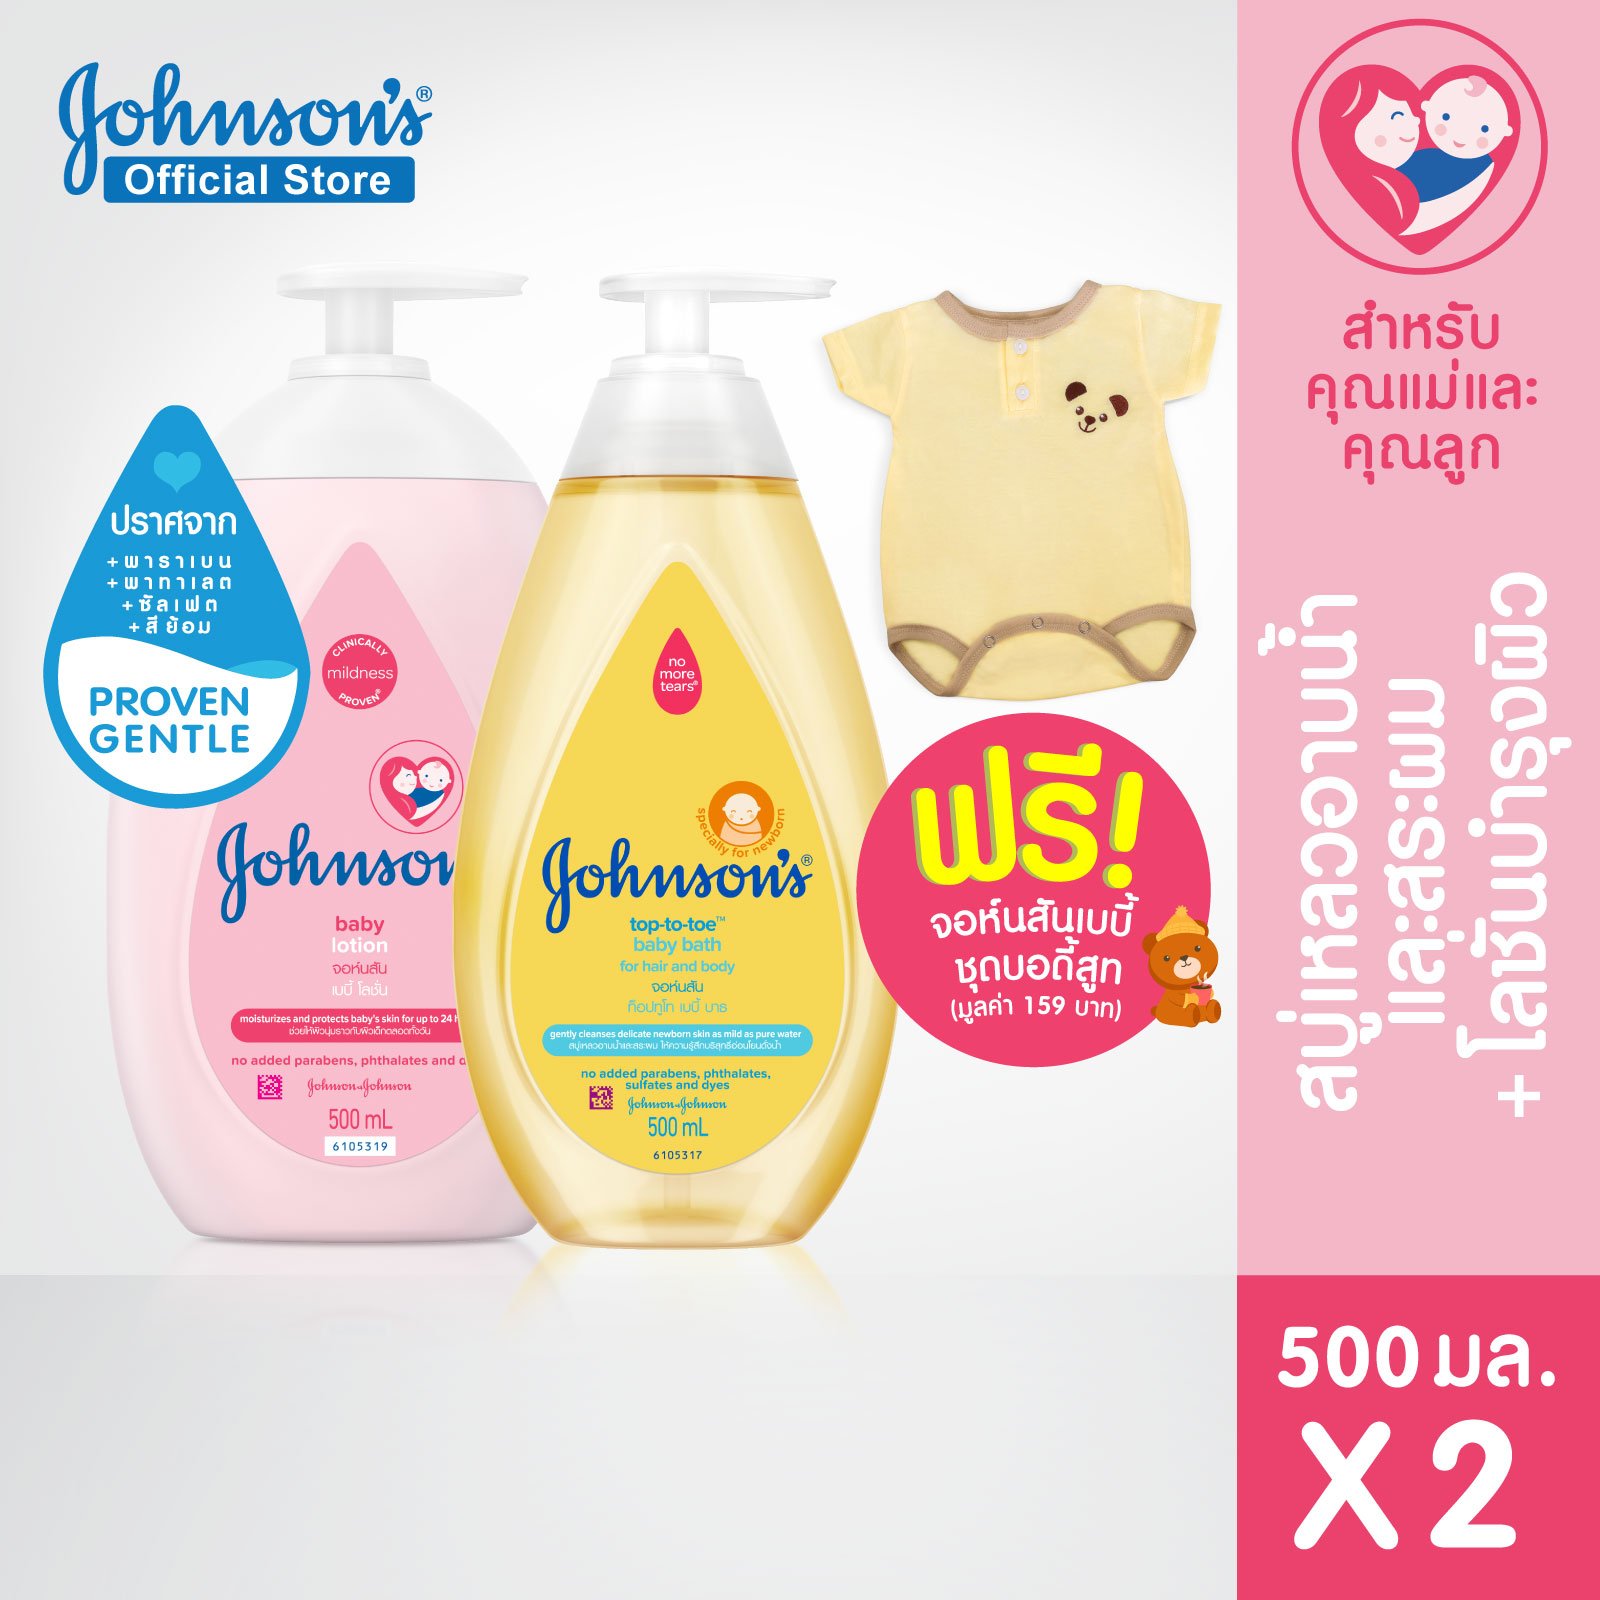 จอห์นสัน ครีมบำรุงผิว เบบี้ โลชั่น 500 มล. + 'จอห์นสัน สบู่อาบน้ำ ท็อปทูโท Johnson's Body Lotion Baby Lotion 500 ml + Johnson's WashTop to Toe Baby Bath 500 ml Free Johnson’s baby body suit